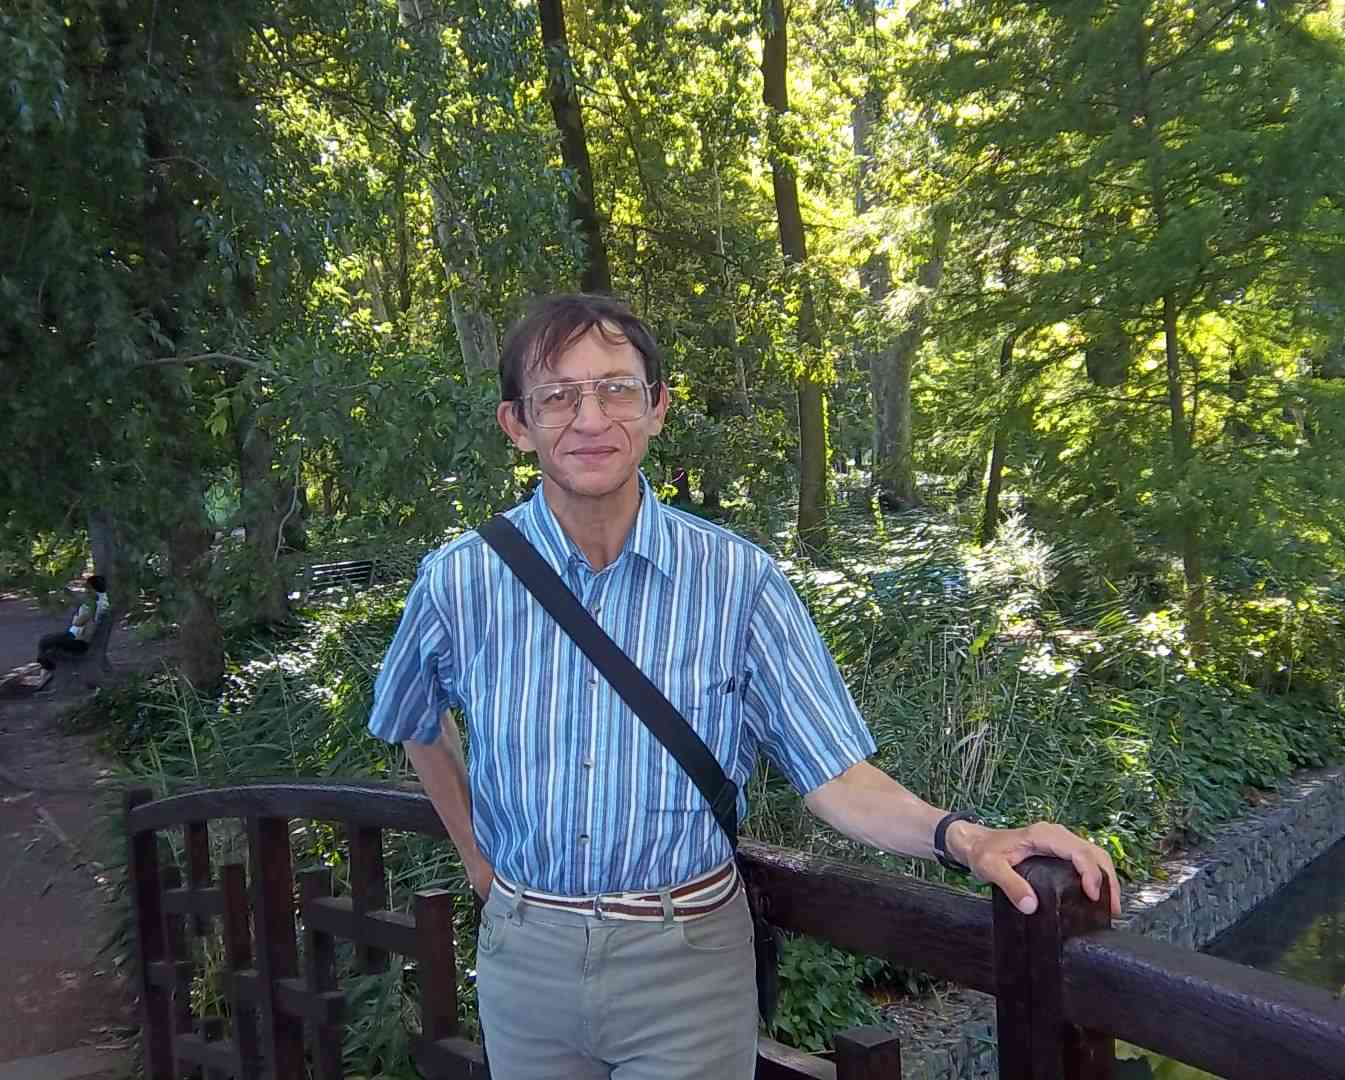 Patrick Huet sur un pont au Parc de la Tête d'or, moment de détente.